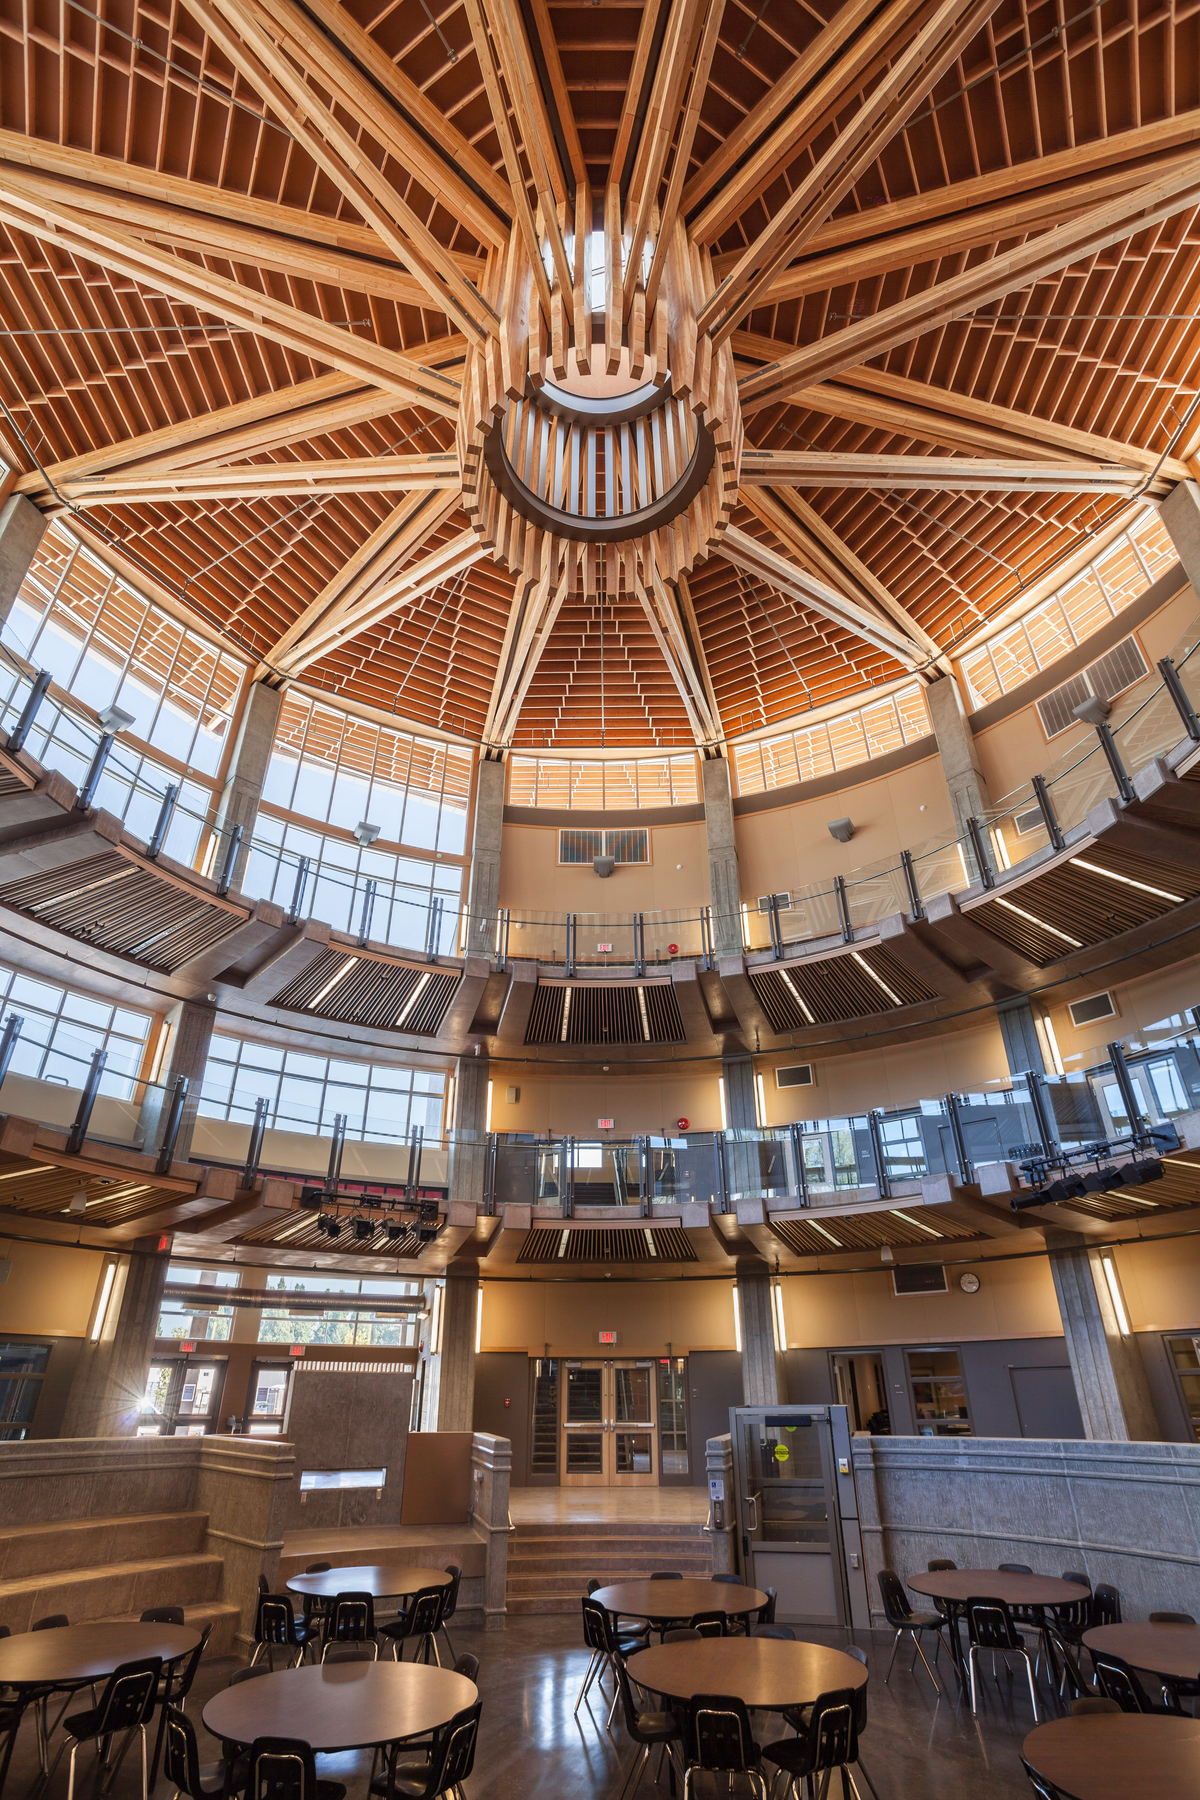 胶合层压木材(胶合木)、镶板、胶合板和实心锯厚木材结合在一起，创造了同心圆和圆形阳台，如图所示，这是Abbotsford高中天花板的室内图像